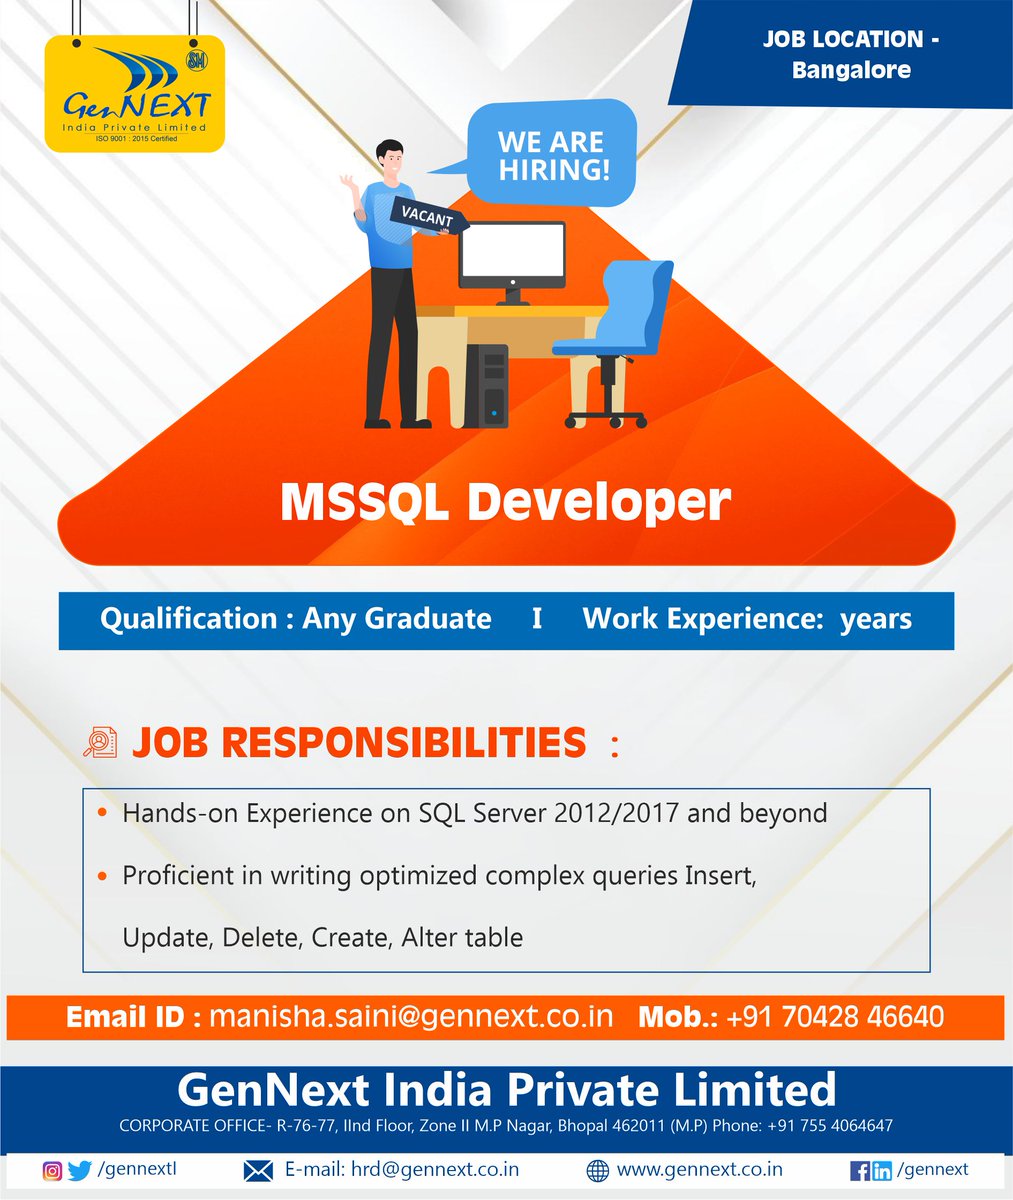 #urgentrequirement

Job Title: MSSQL Developer
Job Location: Bangalore

#mssqldeveloper #bangalorejob #graduate #workfromoffice #bangalore #developer #mode #hiring #experience #hiring2023 #job #work #jobalerts #vacancyjob #gennext #gennexthiring #gennextjob